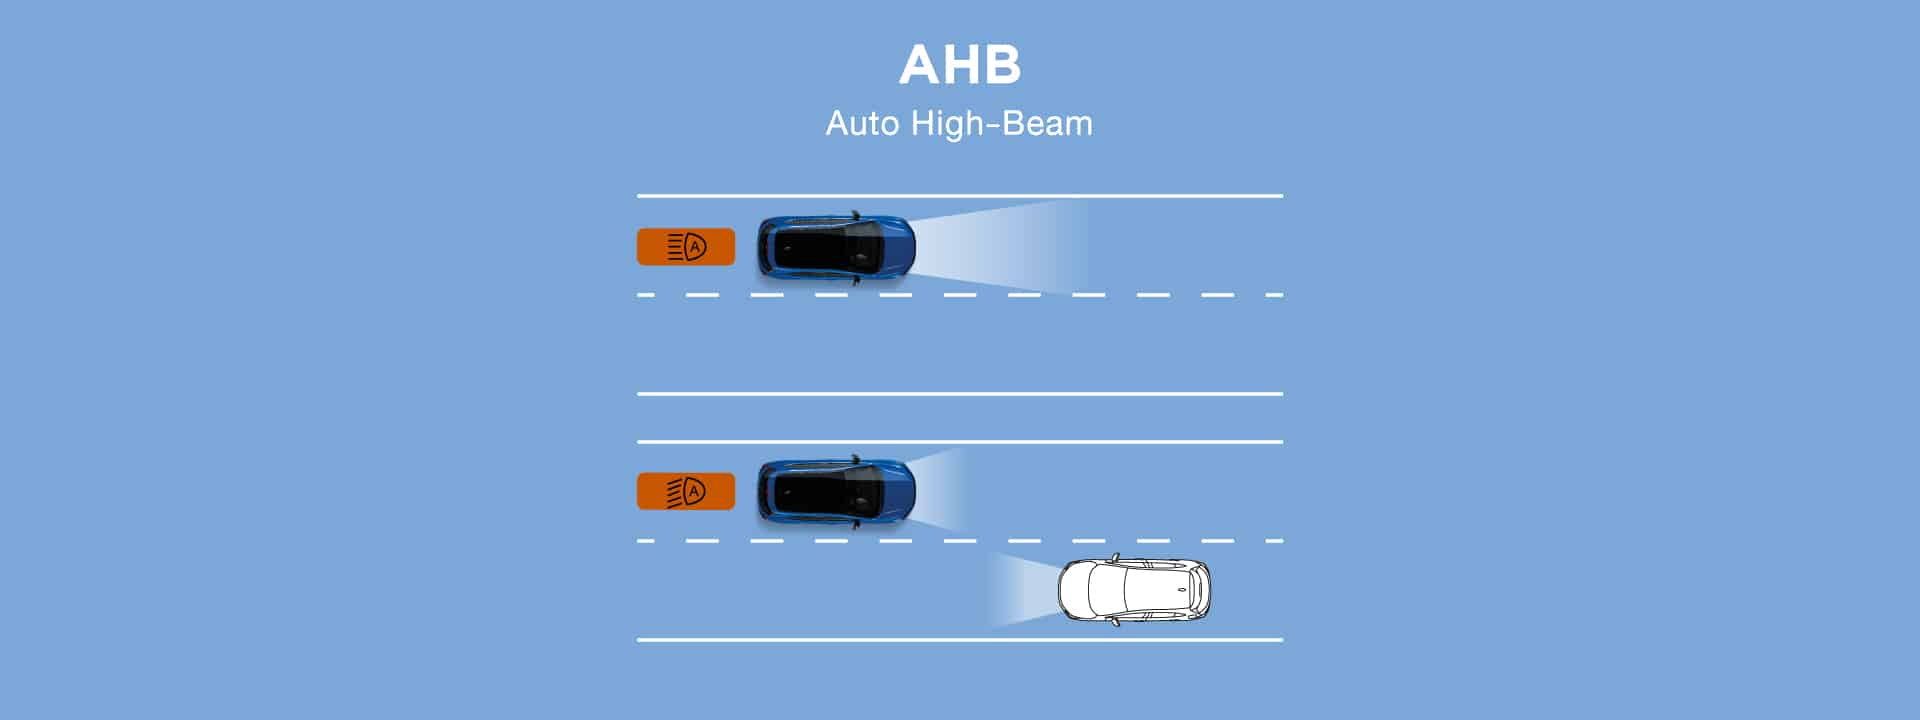 AHB ระบบปรับไฟสูงอัตโนมัติ โดยจะปรับเป็นไฟสูงเมื่อขับขี่ในที่มืด และจะปรับเป็นไฟต่ำเมื่อตรวจจับได้ว่ามีรถสวนทาง หรือรถยนต์ด้านหน้า